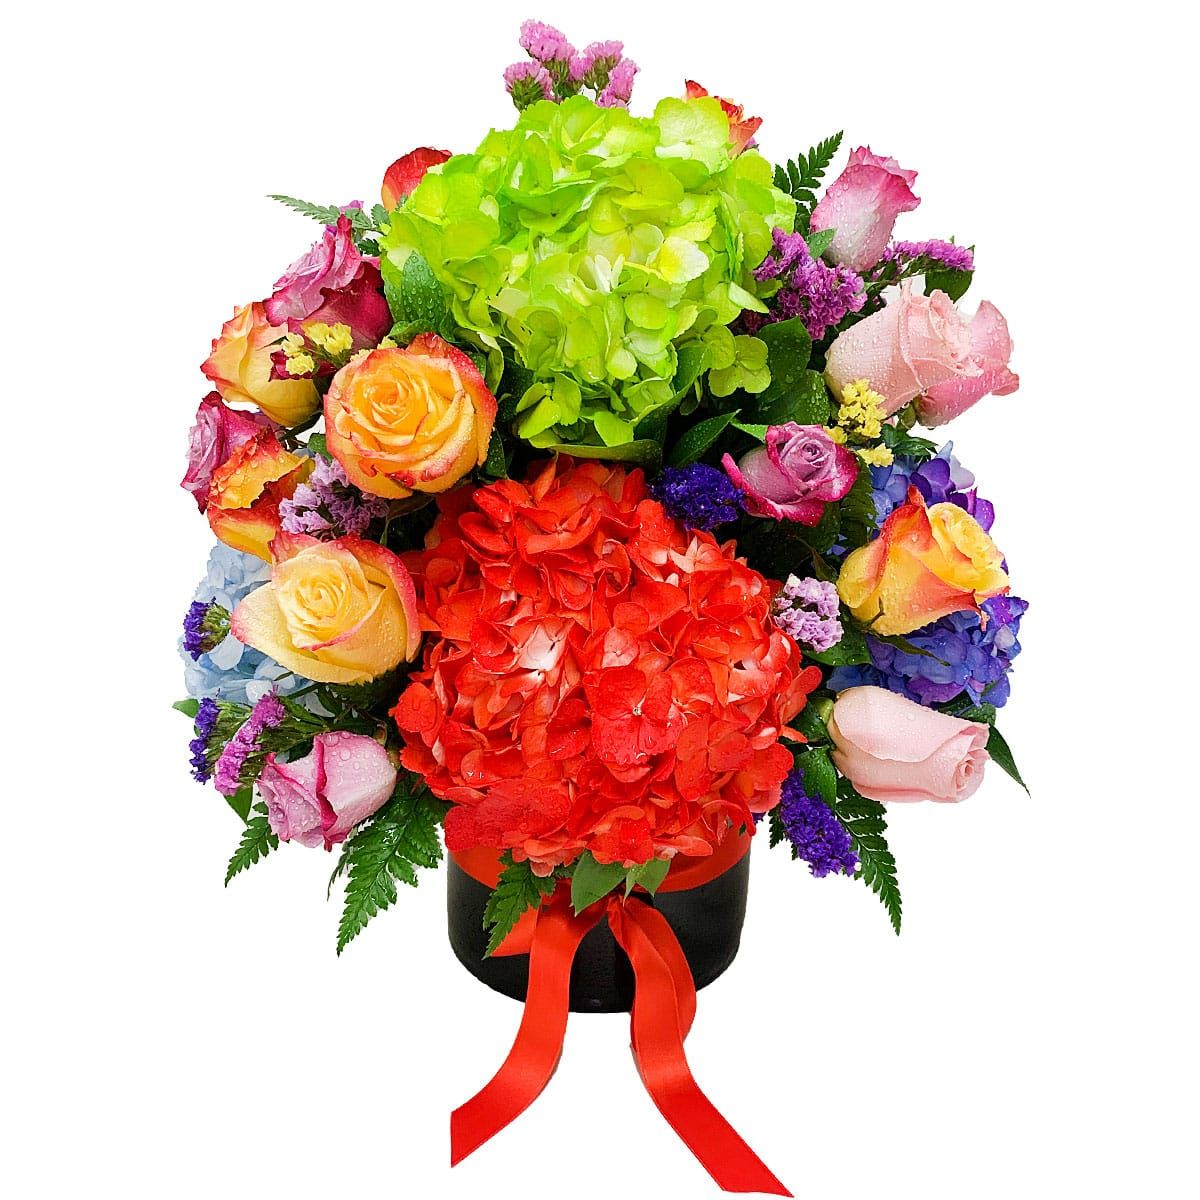 arreglo floral magnifico hortensias y rosas colorido